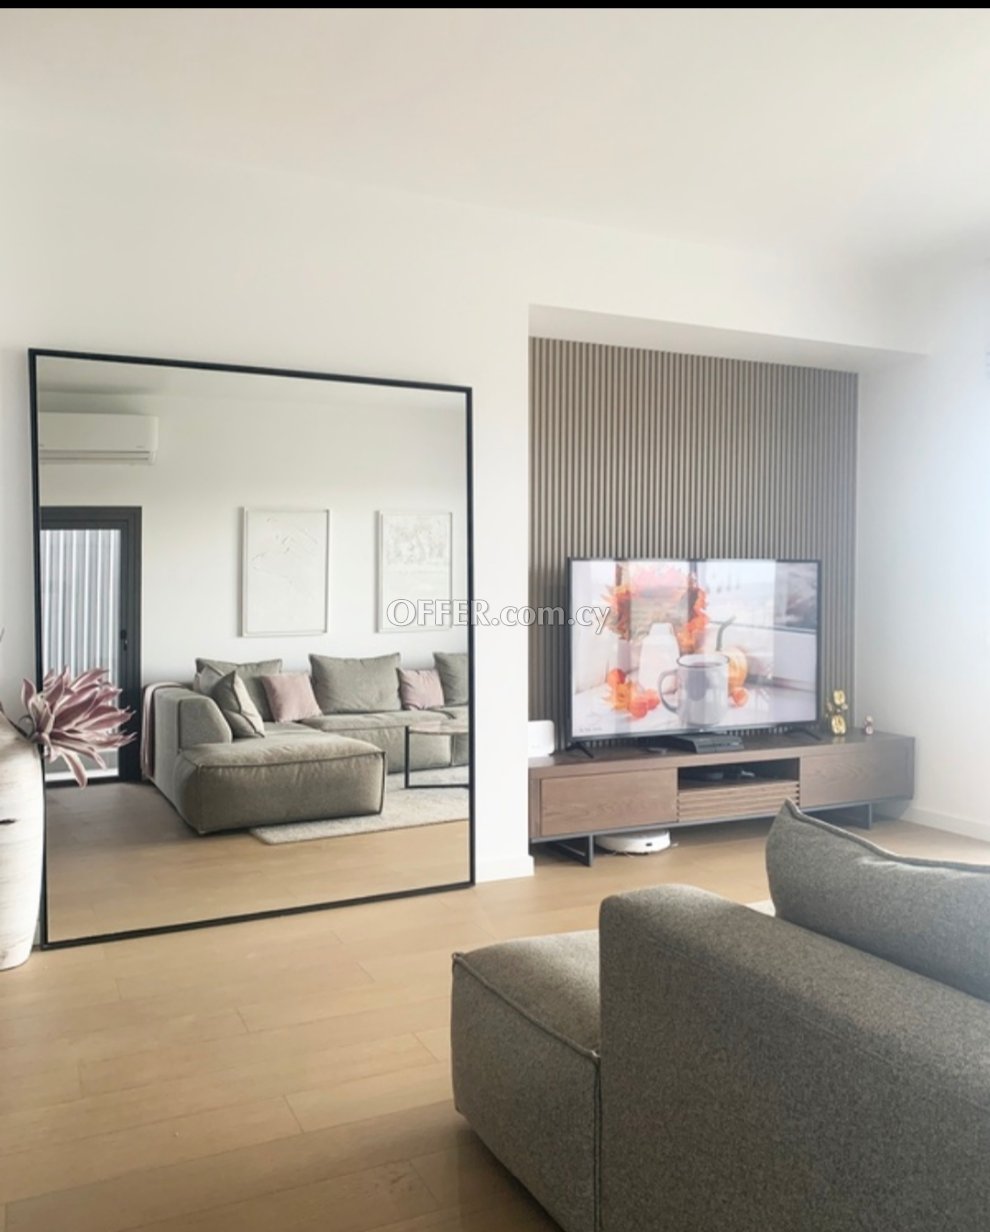 New For Sale €280,000 Apartment 2 bedrooms, Retiré, top floor, Larnaka (Center), Larnaca Larnaca - 2